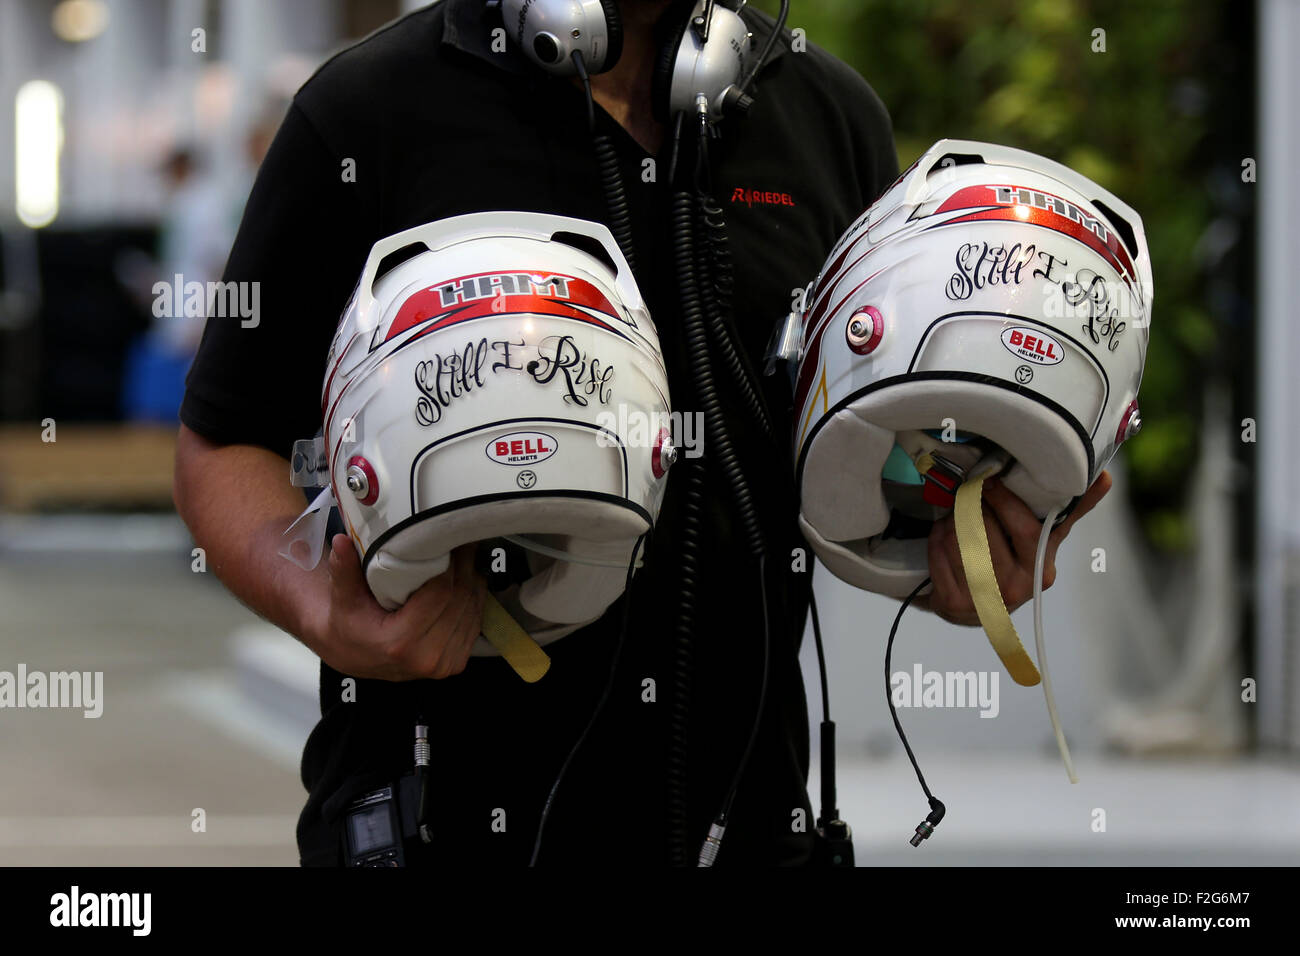 Automovilismo: Campeonato del Mundo de Fórmula Uno FIA 2015, Gran Premio de Singapur, casco de #44 Lewis Hamilton (GBR, Mercedes AMG Petronas Formula One Team), Foto de stock